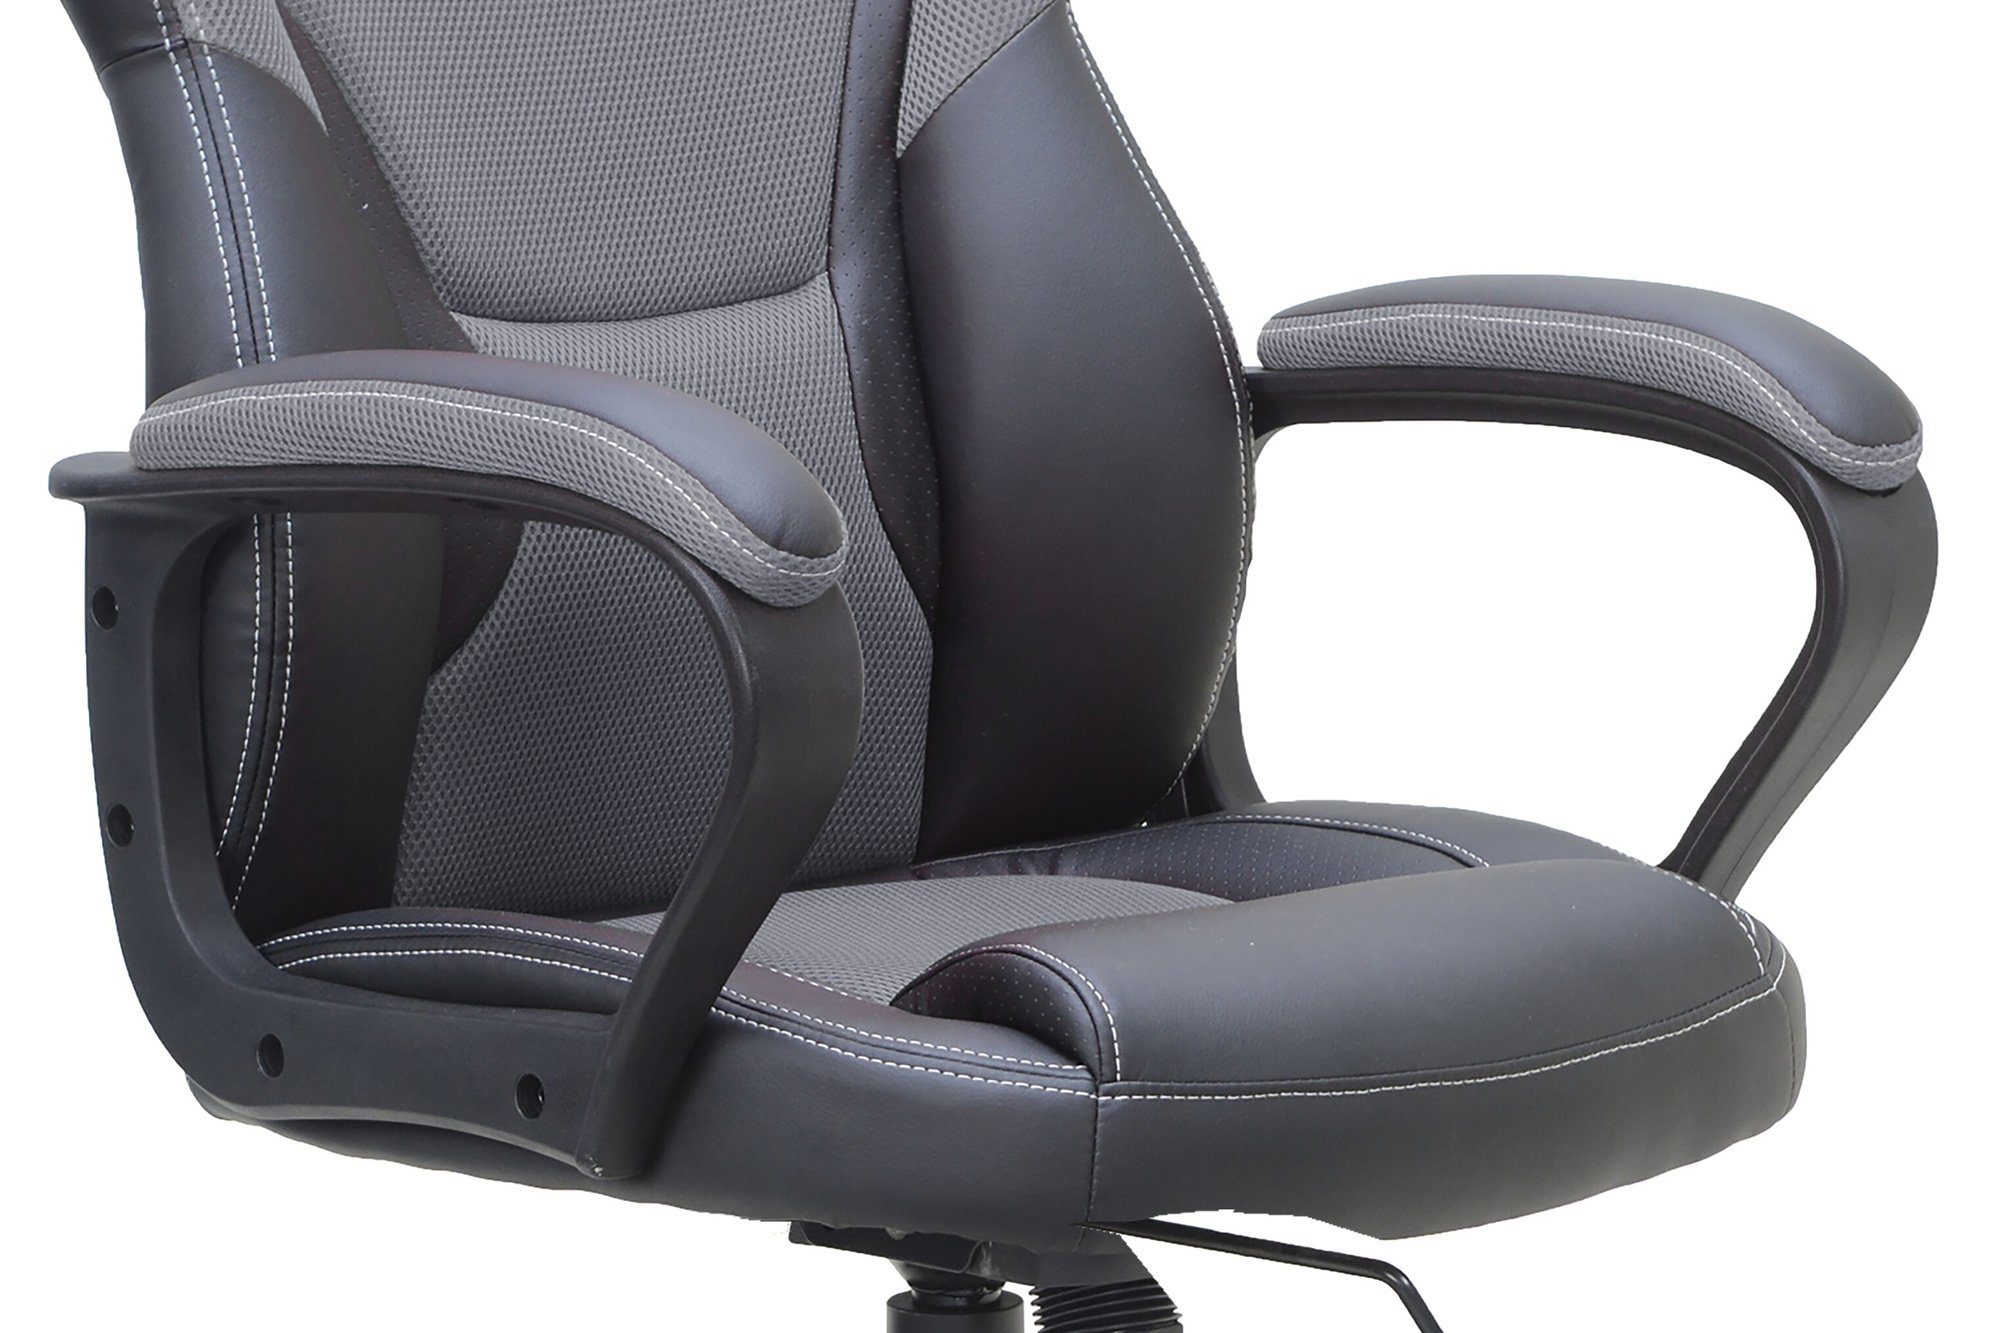 möbelando 60x65 in Chair MATTEO schwarz/grau cm), Gaming (BxT: